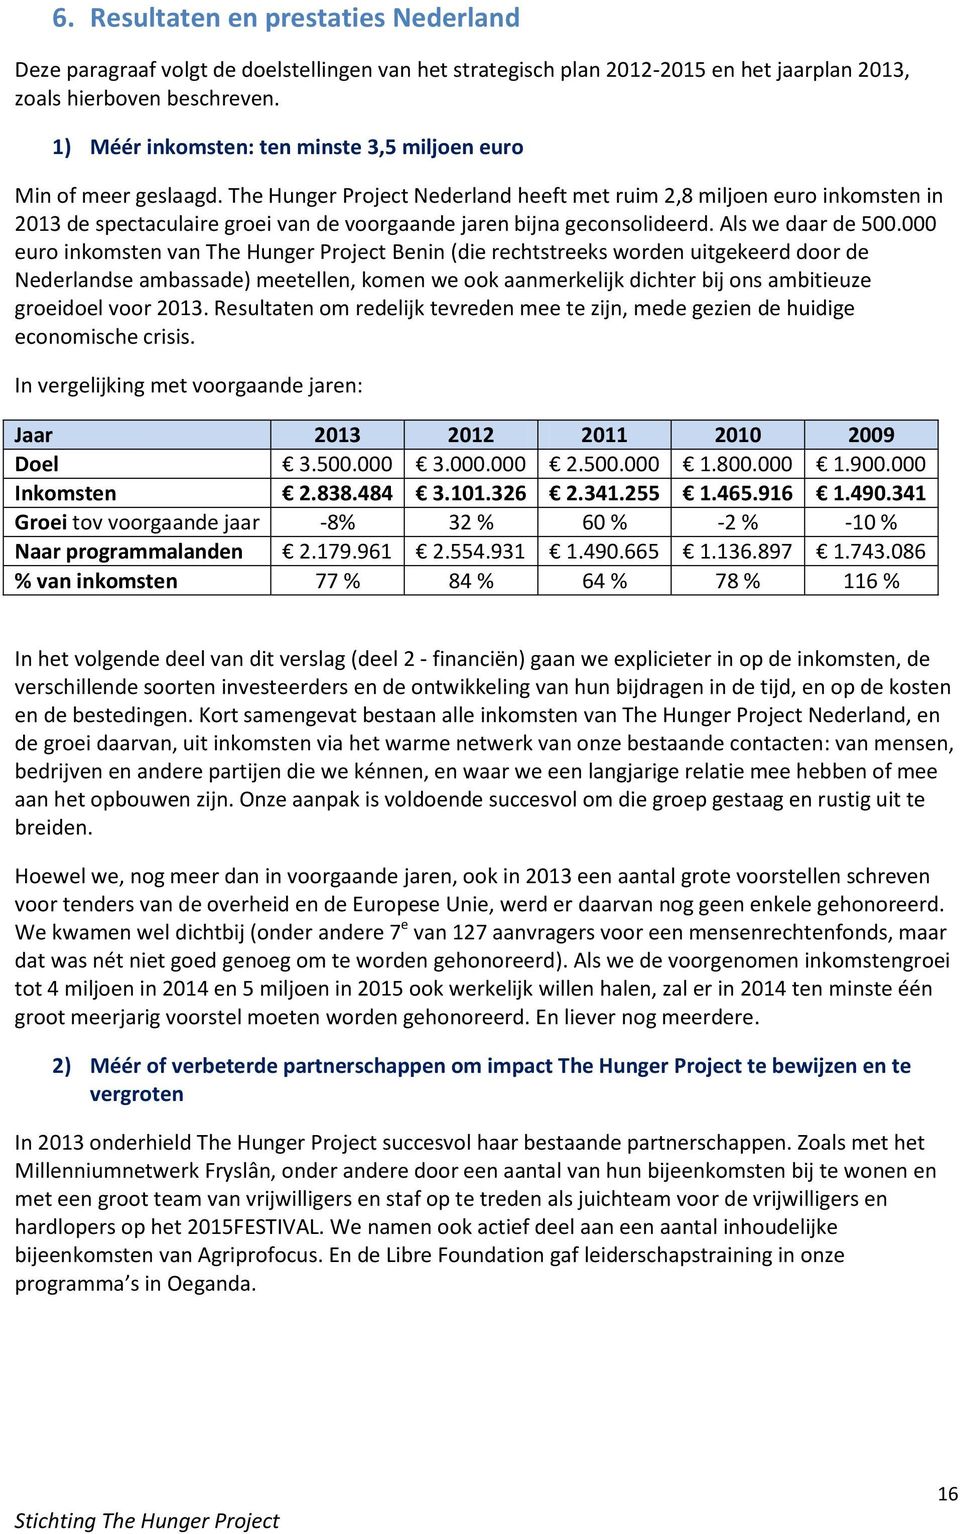 The Hunger Project Nederland heeft met ruim 2,8 miljoen euro inkomsten in 2013 de spectaculaire groei van de voorgaande jaren bijna geconsolideerd. Als we daar de 500.